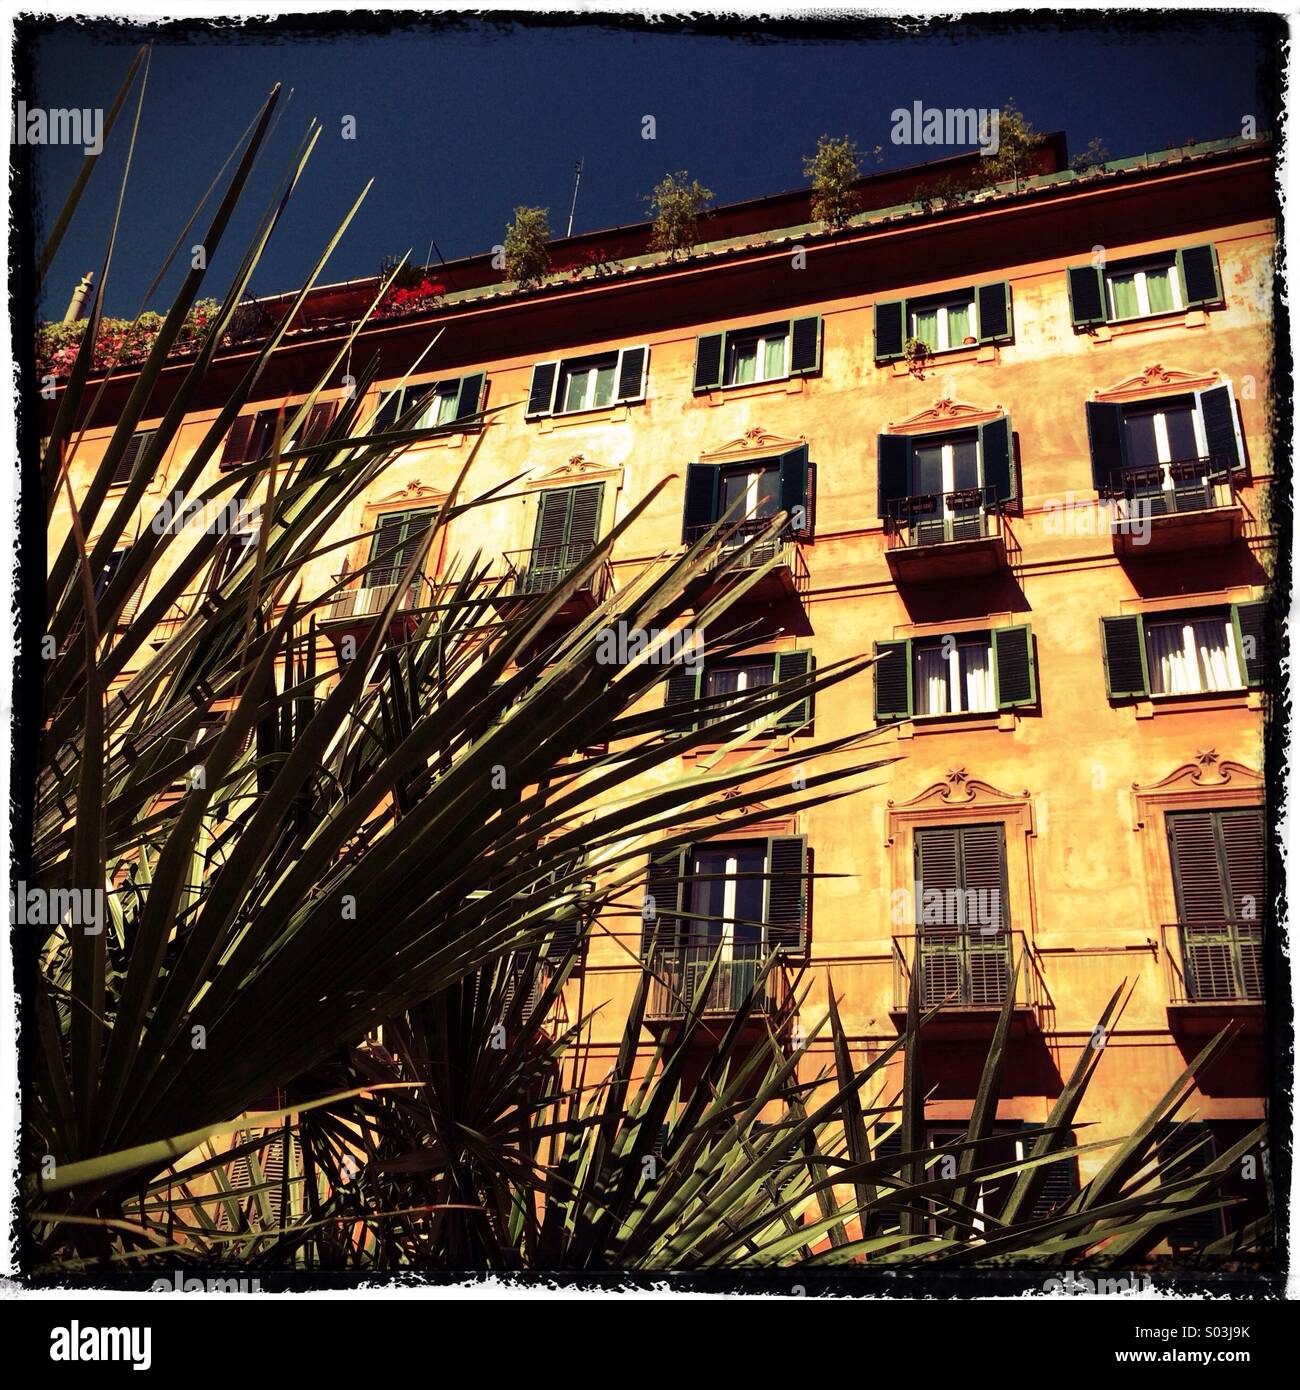 Palm et bâtiments, Rome Italie Europe Banque D'Images